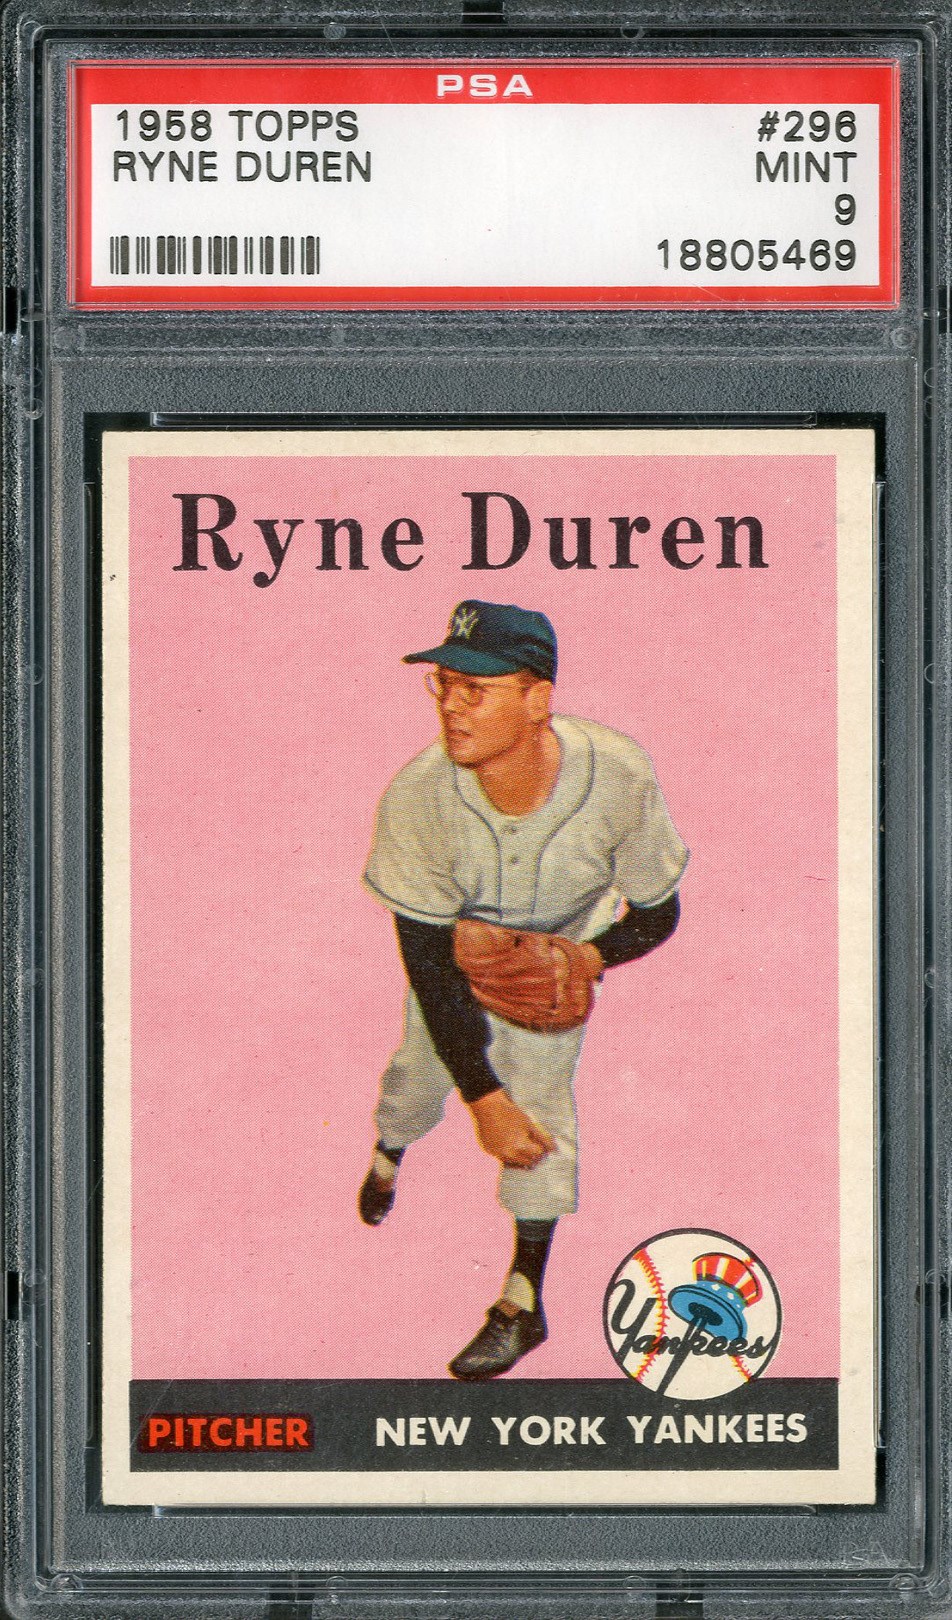 Baseball and Trading Cards - 1958 Topps #296 Ryne Duren PSA MINT 9